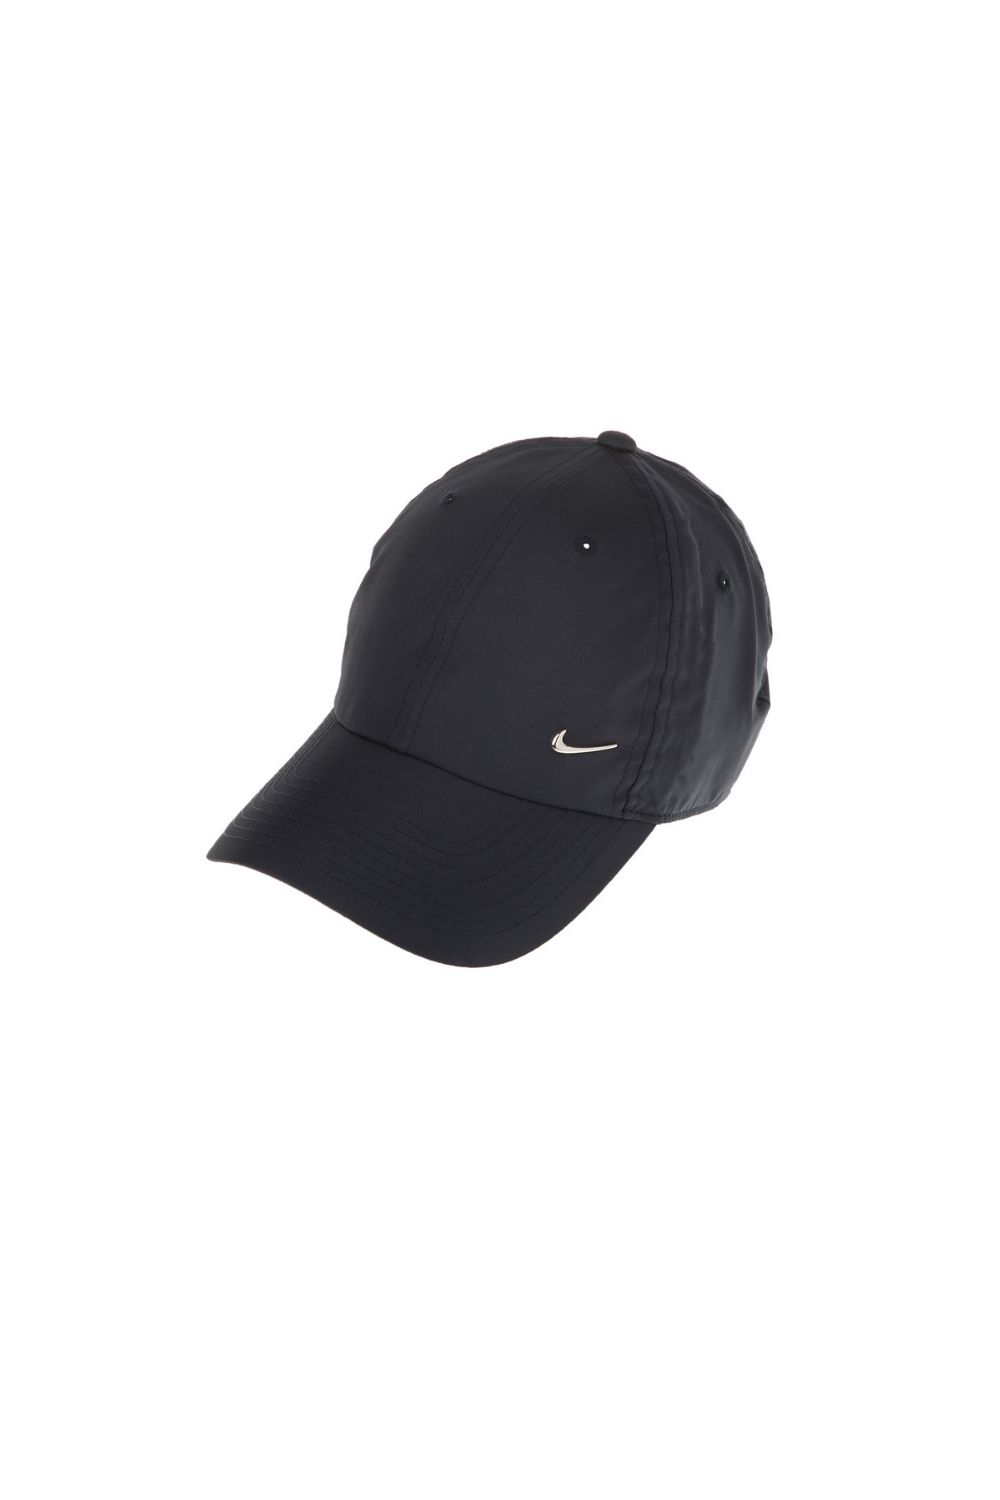 Γυναικεία/Αξεσουάρ/Καπέλα/Αθλητικά NIKE - Unisex καπέλο NIKE METAL SWOOSH μπλε